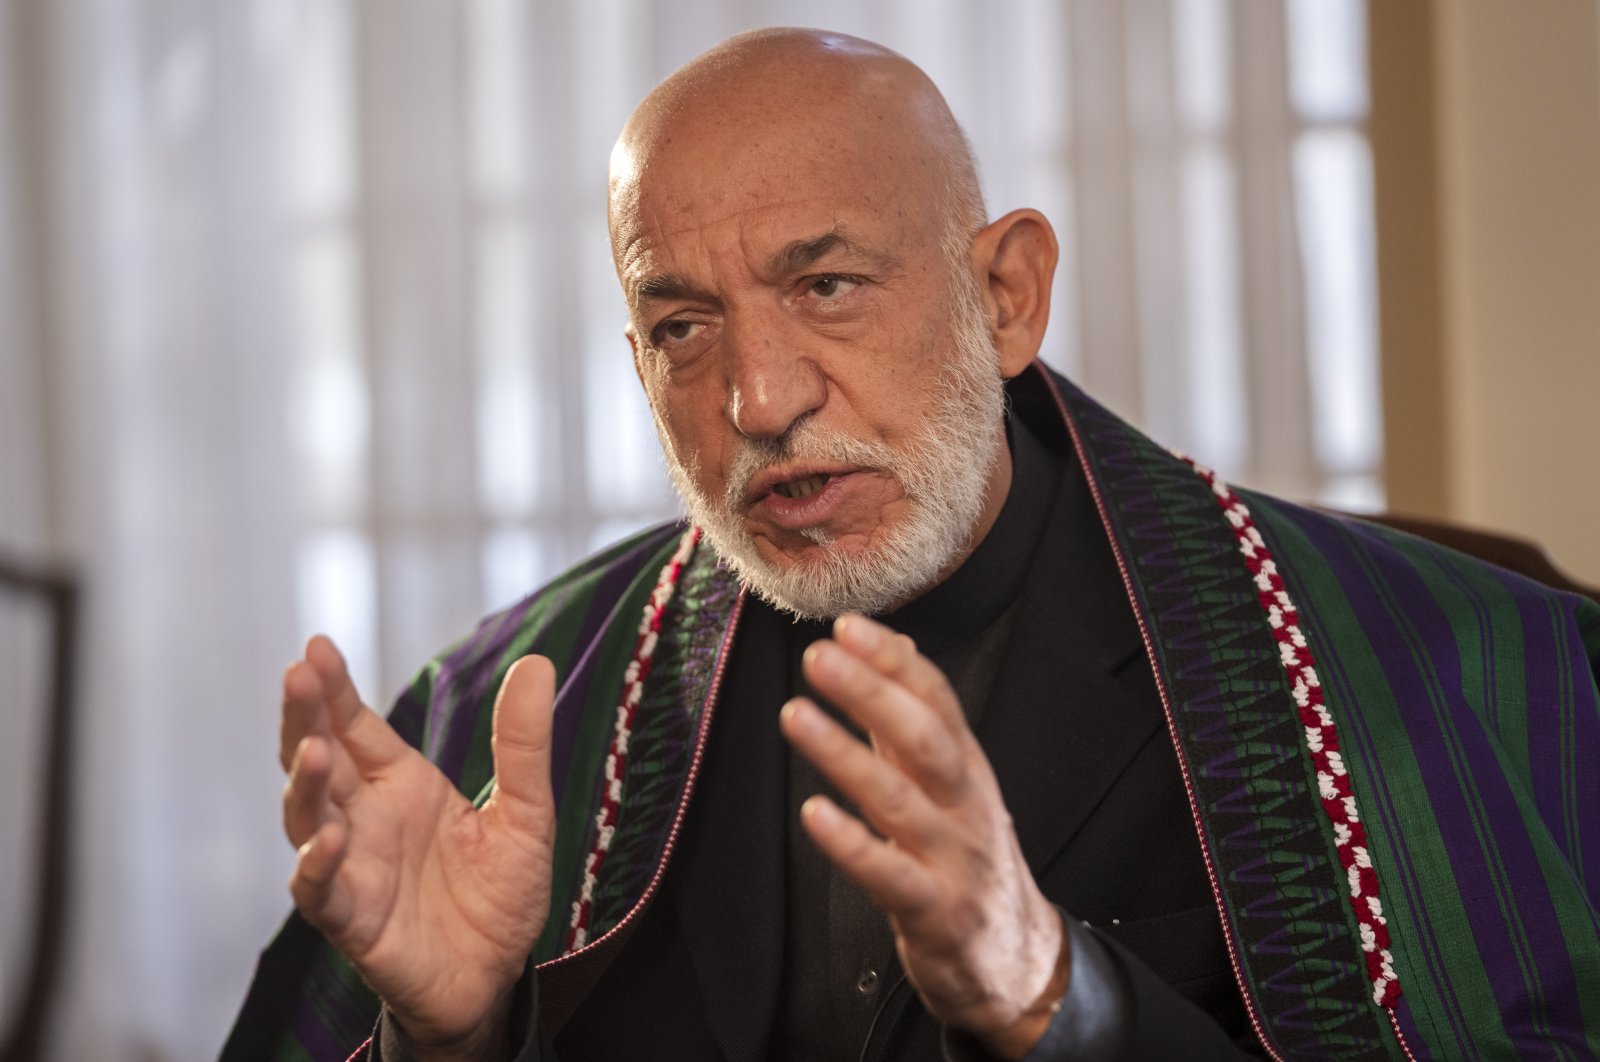 Mantan Presiden Afghanistan Karzai ‘mengundang’ Taliban ke Kabul untuk mencegah kekacauan